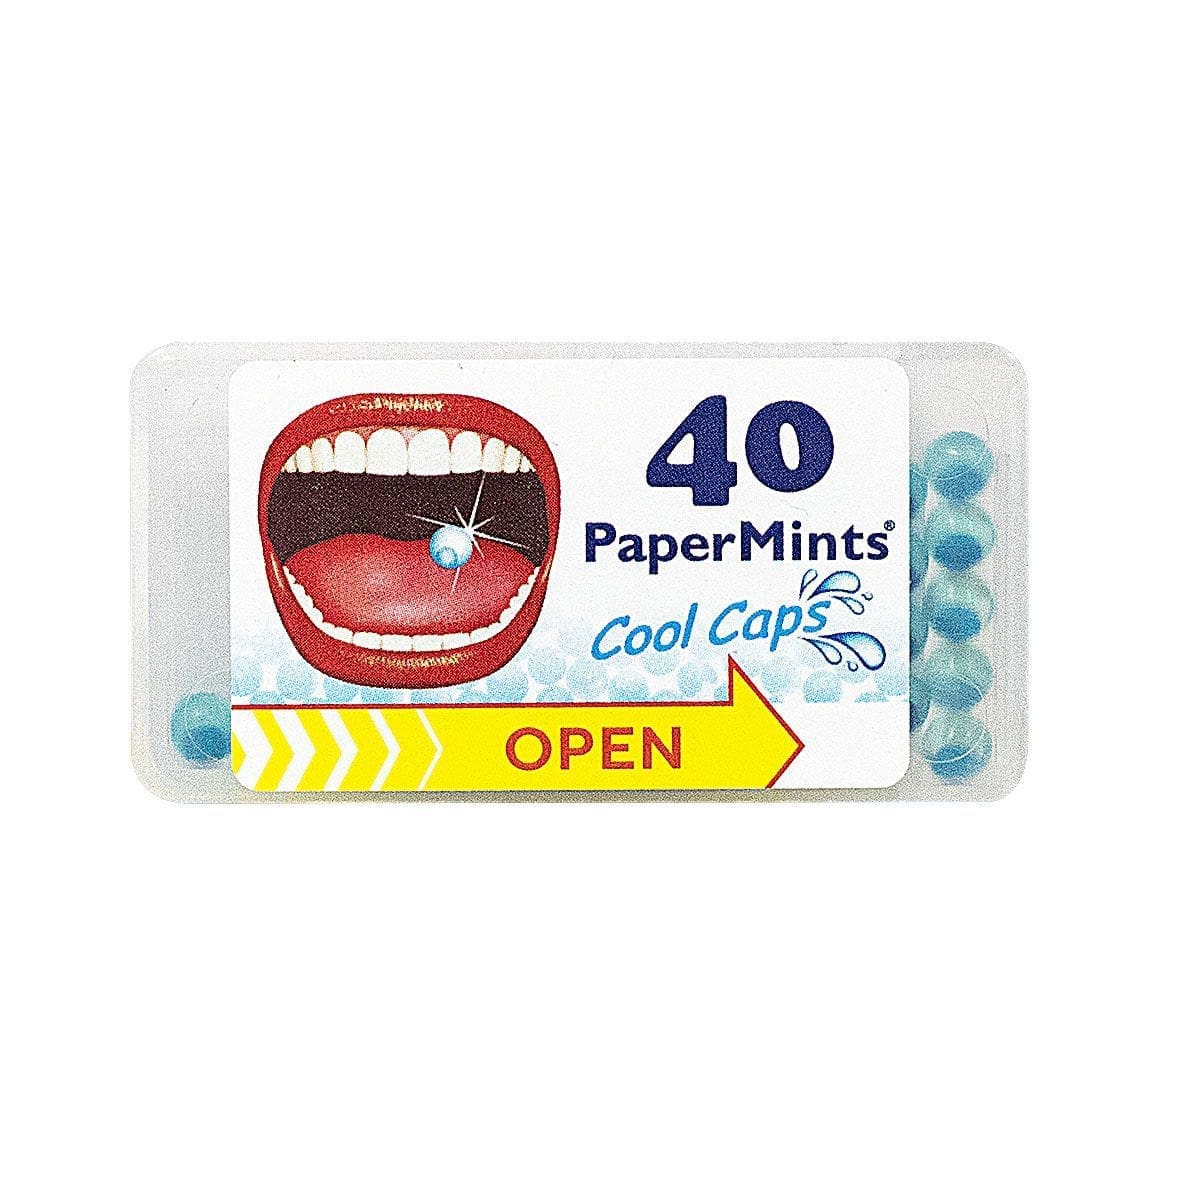 Papermints 40 Cool Caps